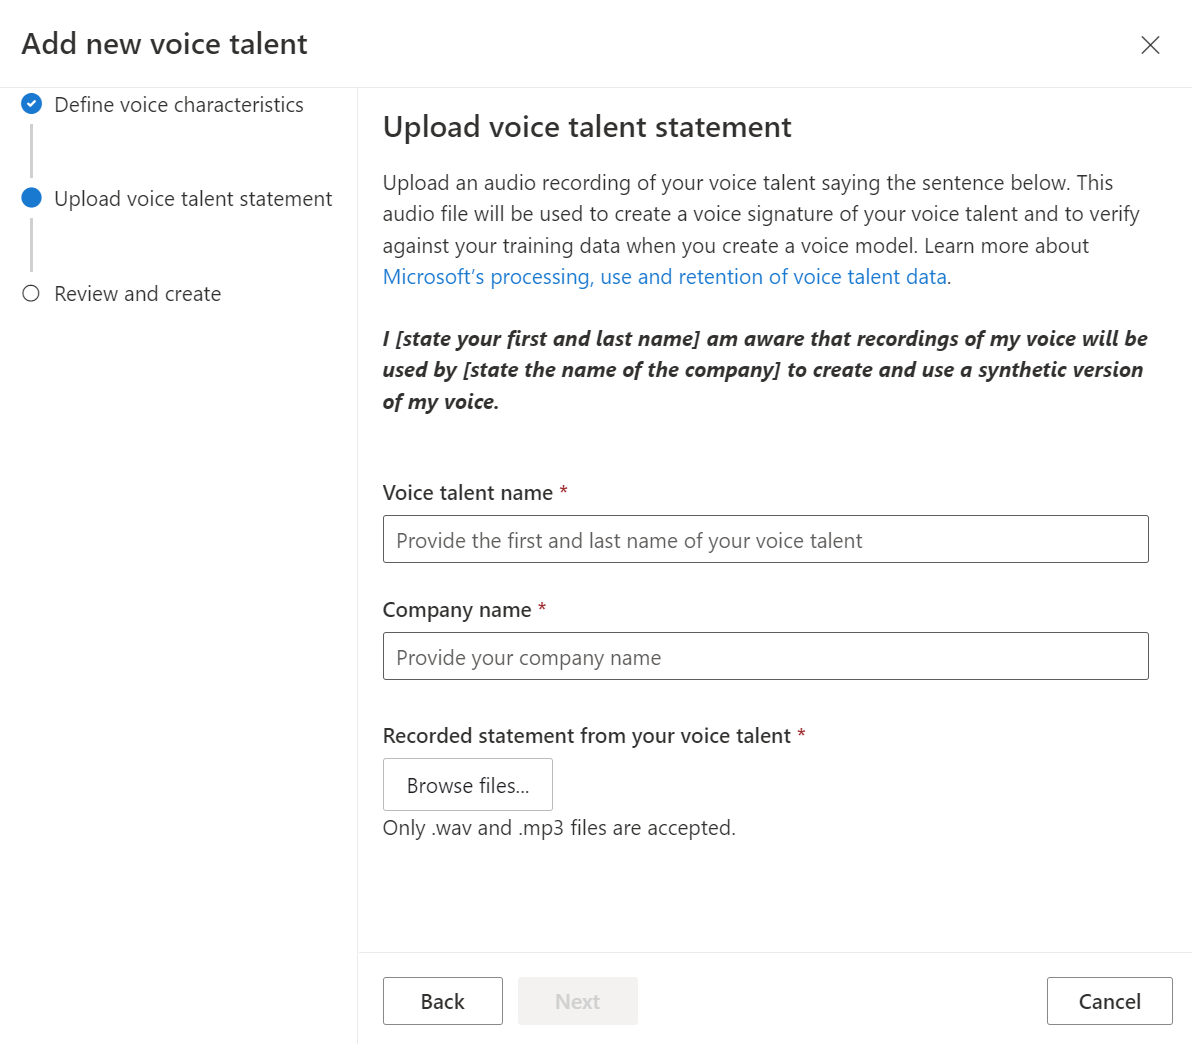 Upload voice talent statement